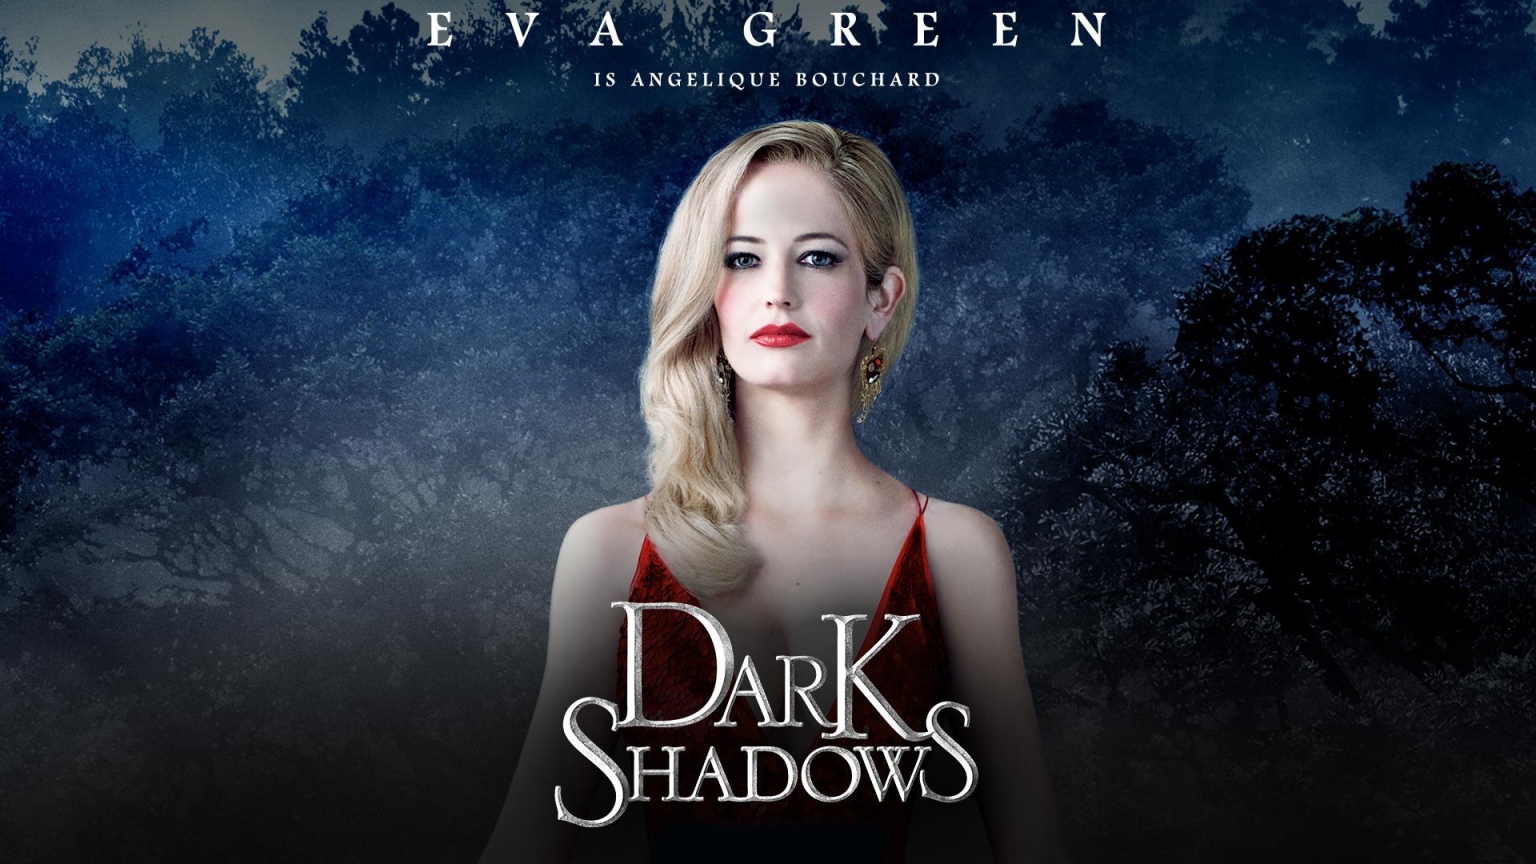 Dark Shadows Eva Green for 1536 x 864 HDTV resolution